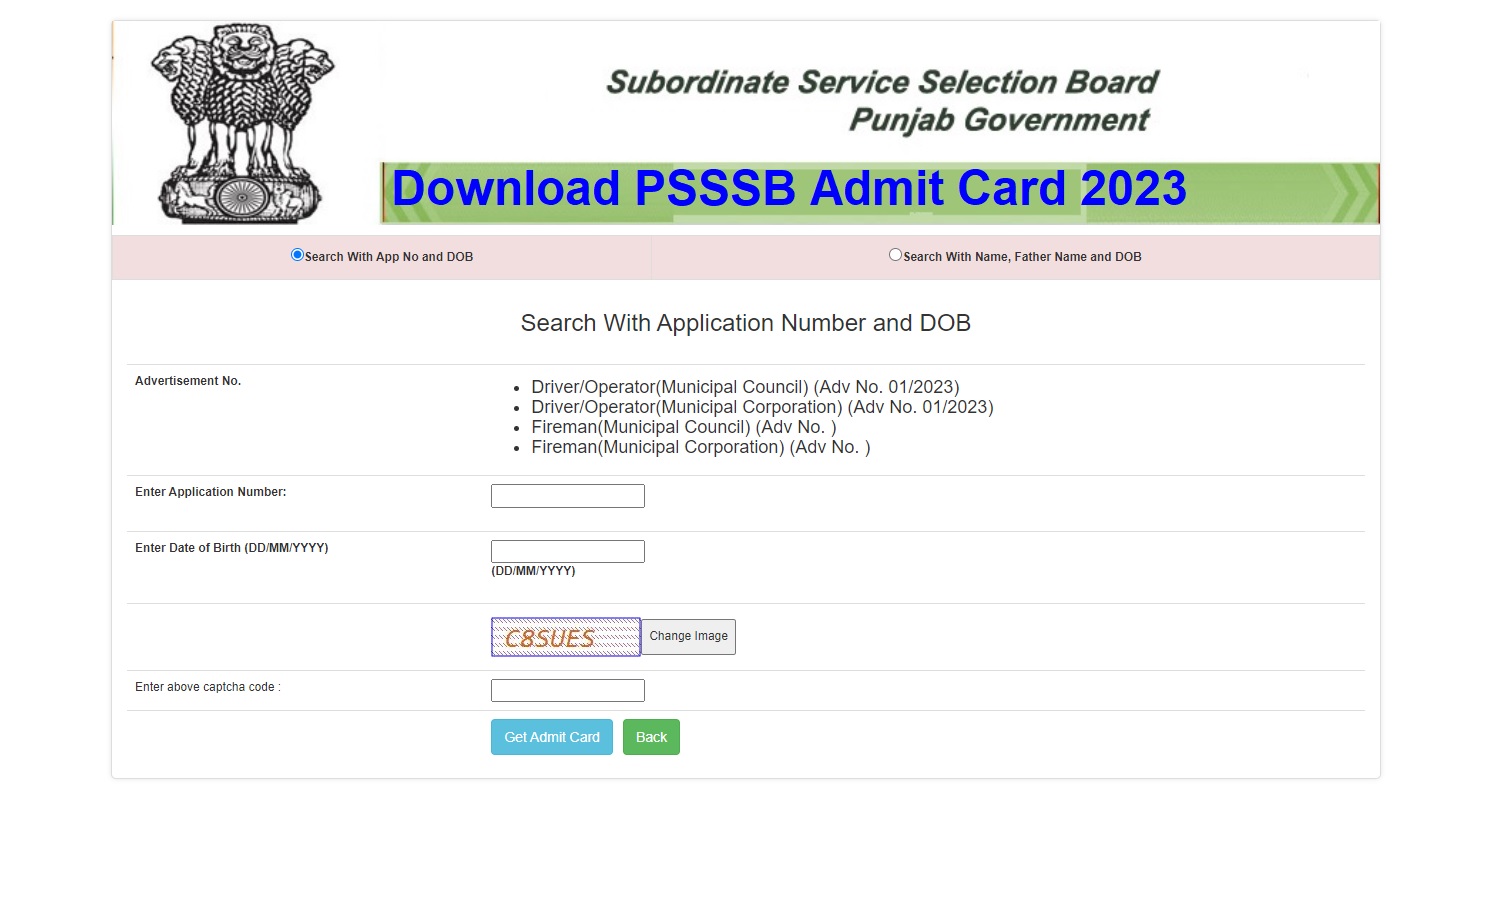 PSSSB Fireman Admit Card 2023